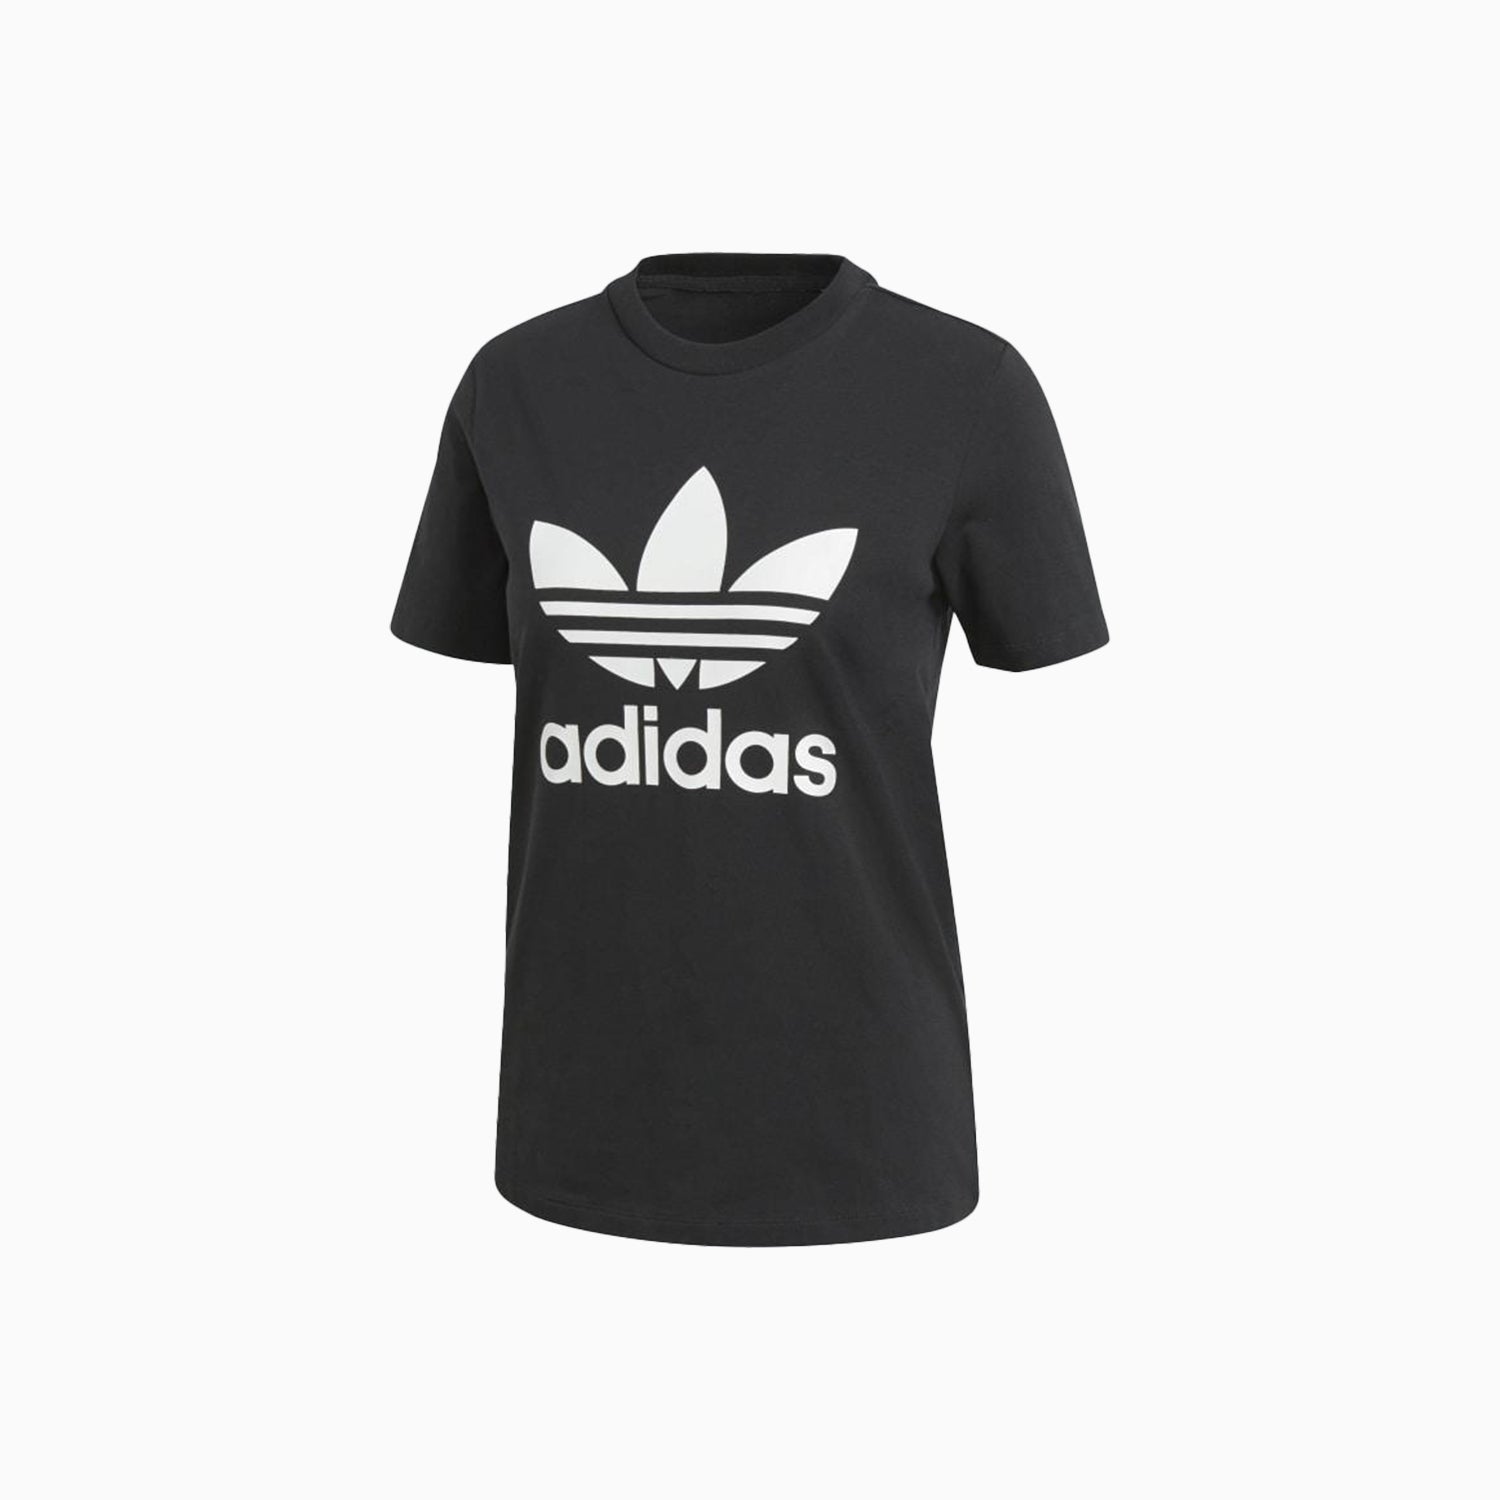 adidas-womens-originals-trefoil-logo-t-shirt-cv9888